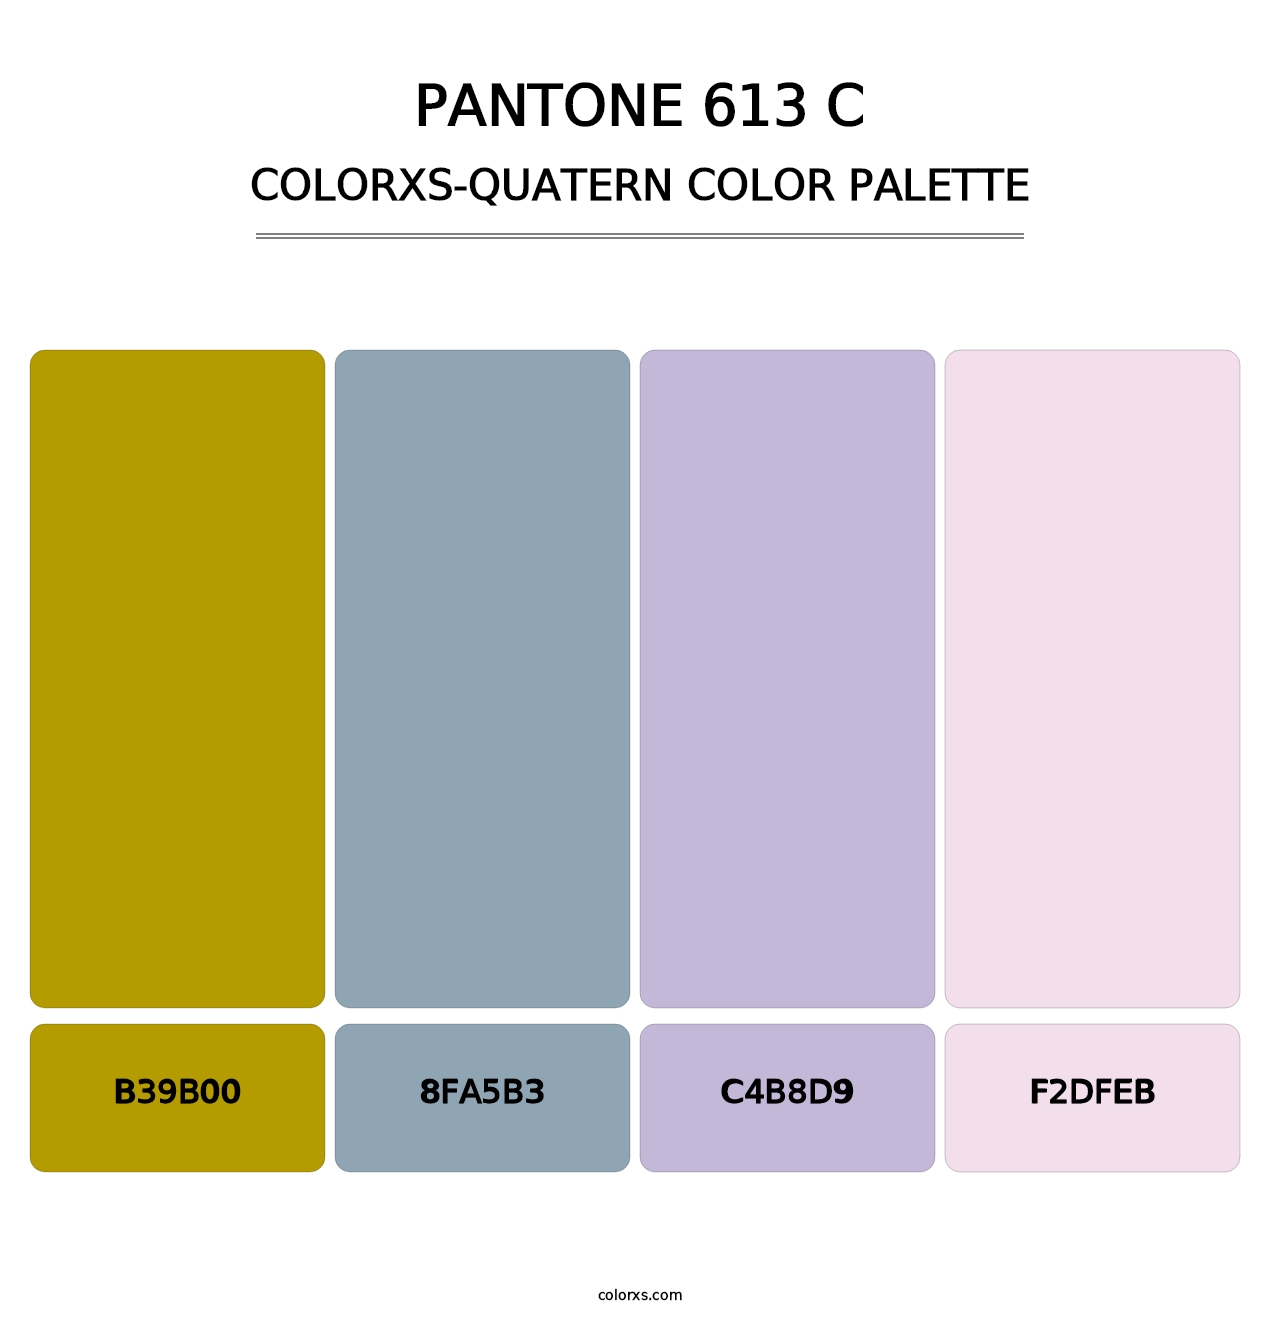 PANTONE 613 C - Colorxs Quatern Palette